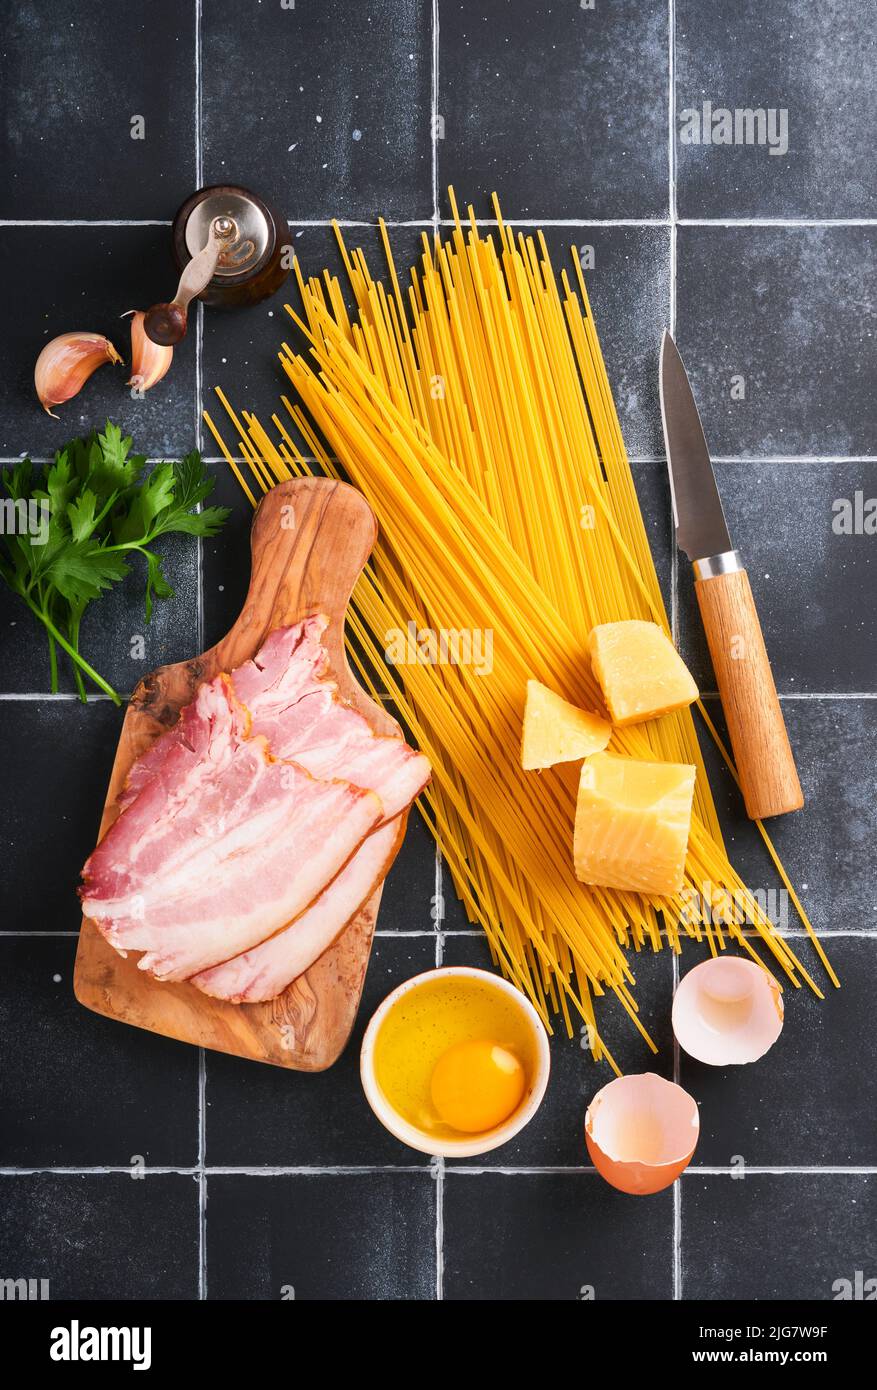 Ingrédients pour pâtes Carbonara. Pâtes italiennes Traidtional Carbonara Ingrédients bacon, spaghetti, parmesan et jaune d'œuf, ail. Table noire en vieux carreaux Banque D'Images